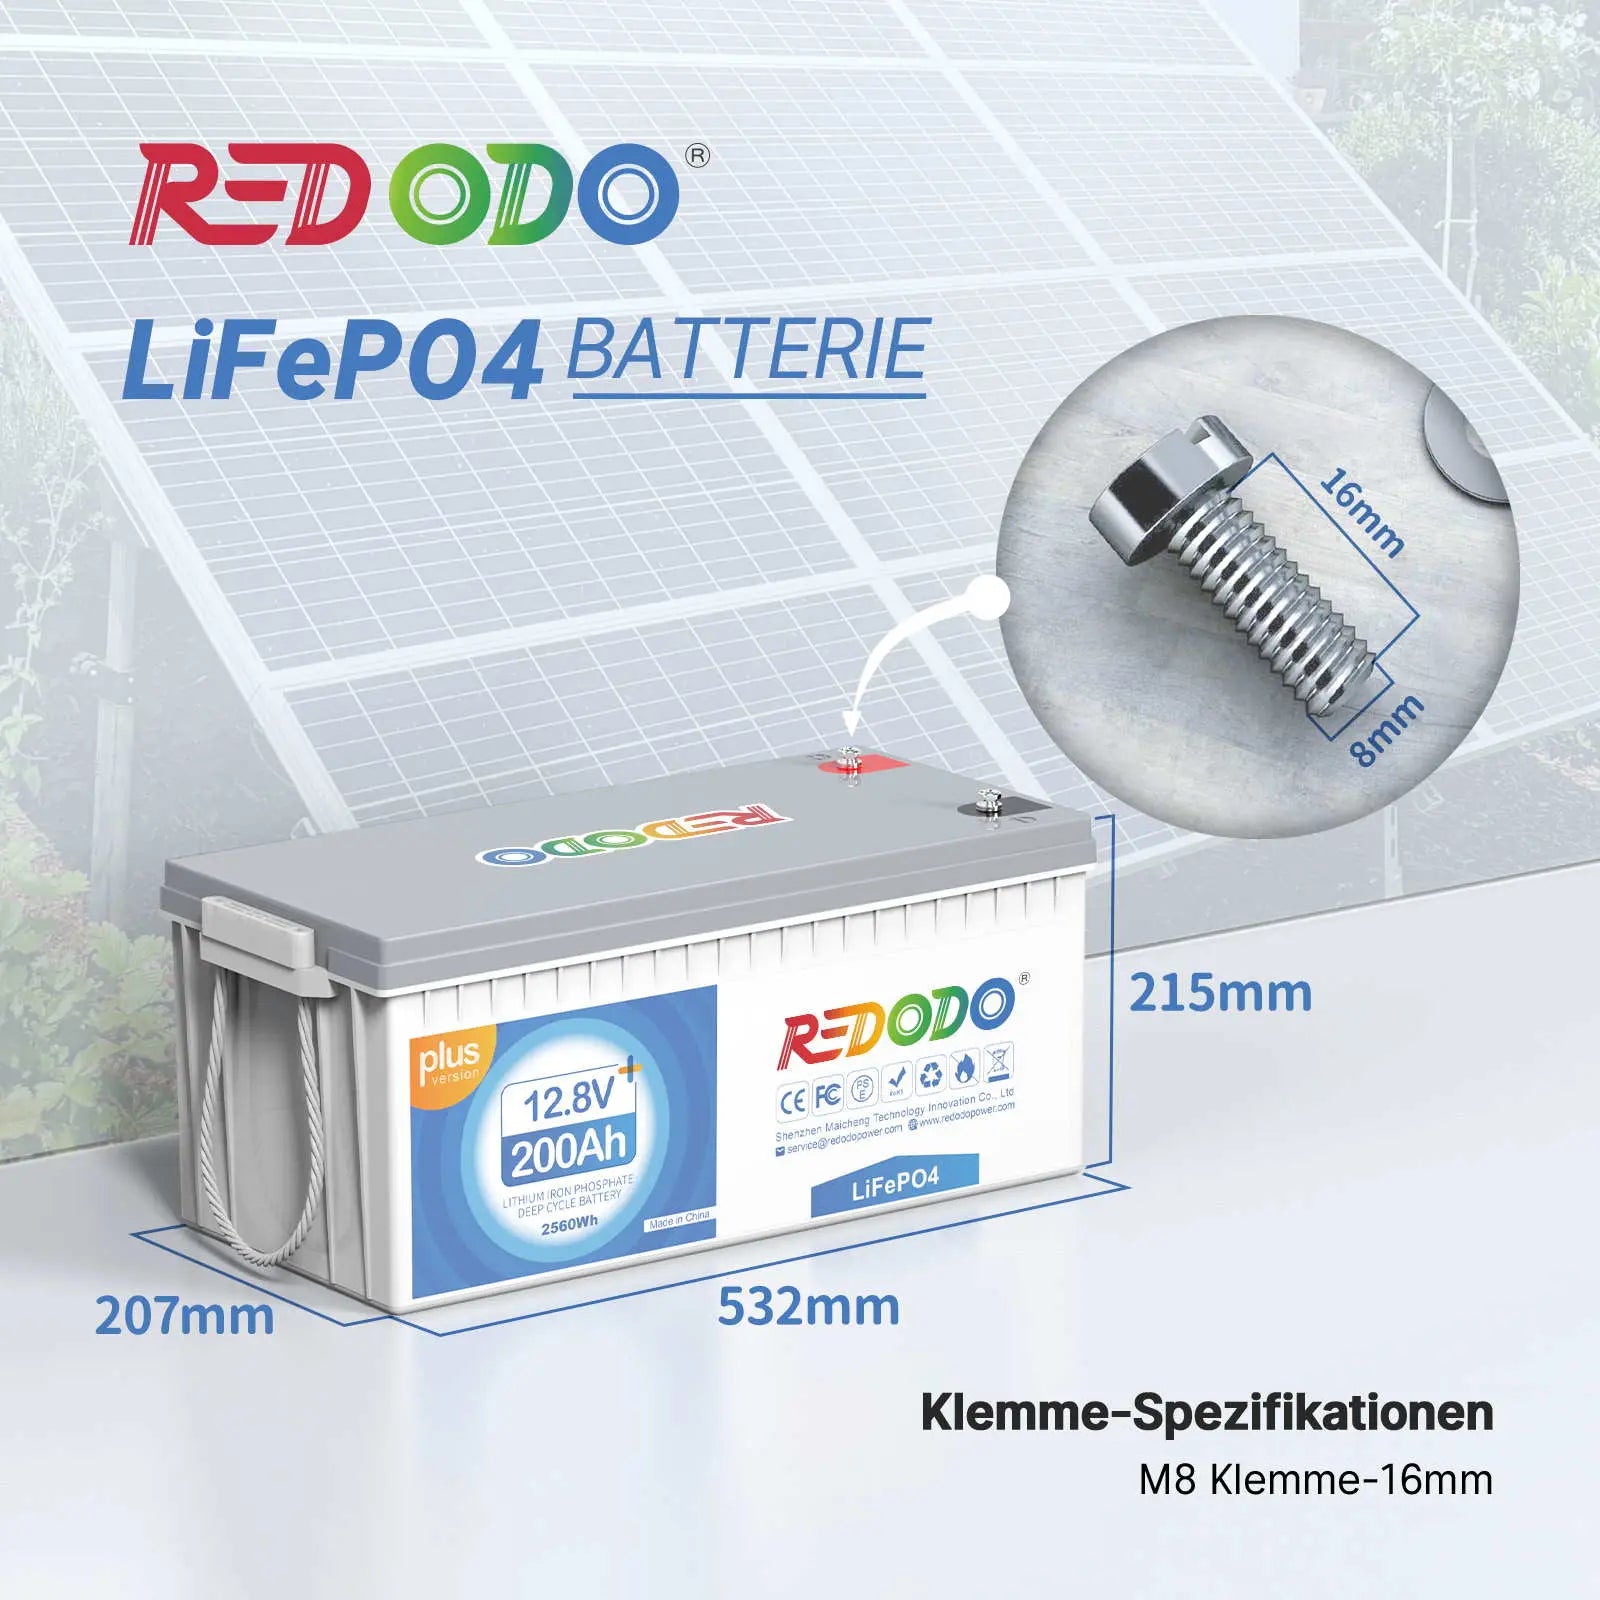 Batterie Redodo LiFePO4 200Ah Plus 12V | 2,56 kWh et 2,56 kW